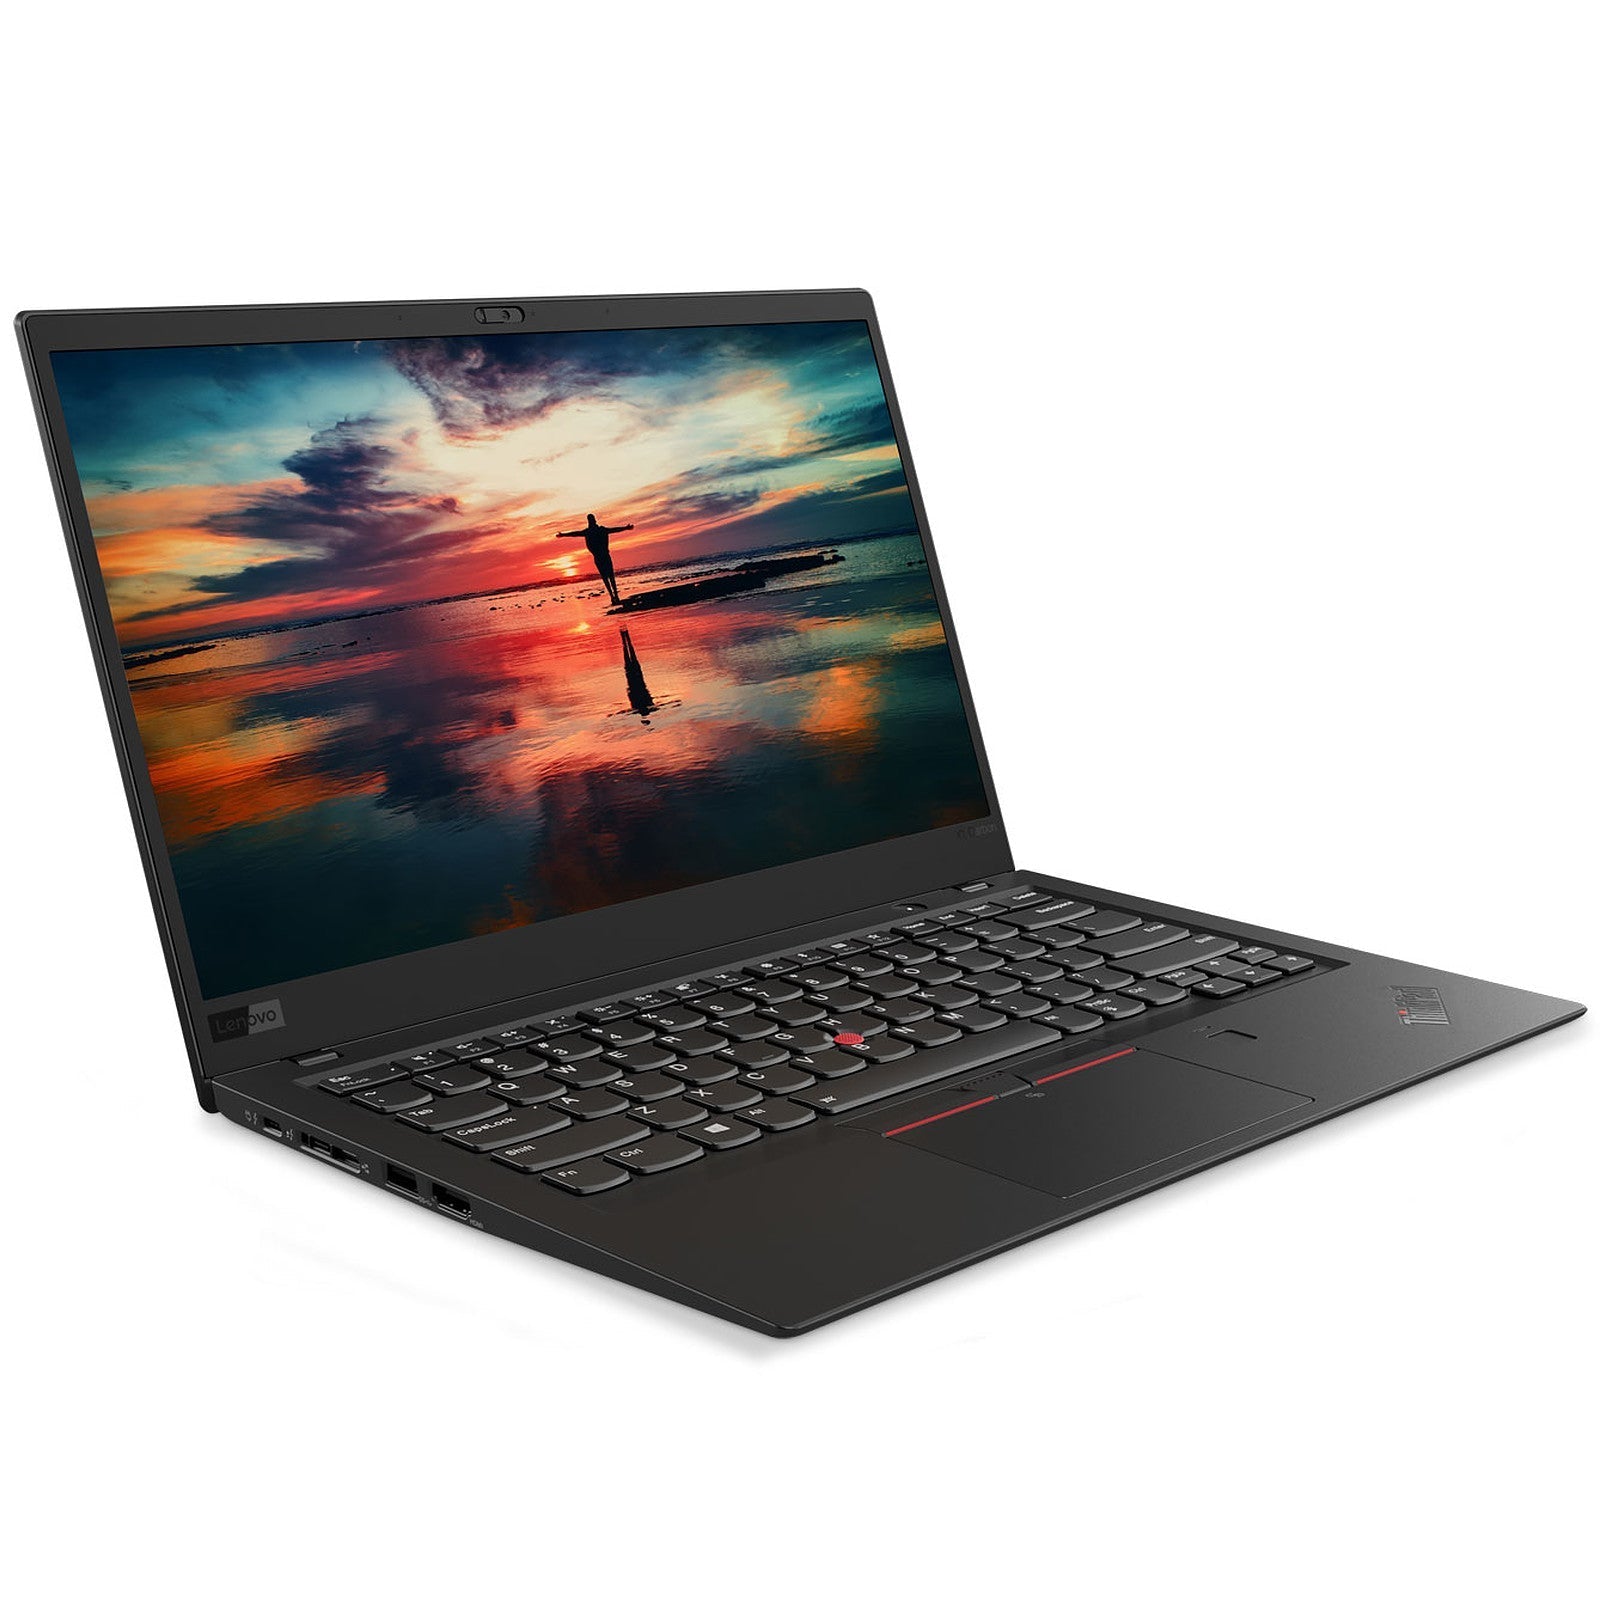 Billede af Lenovo ThinkPad X1 Carbon 6. gen. Touch | i5 | 16GB | 256GB SSD - Brugt - Meget god stand